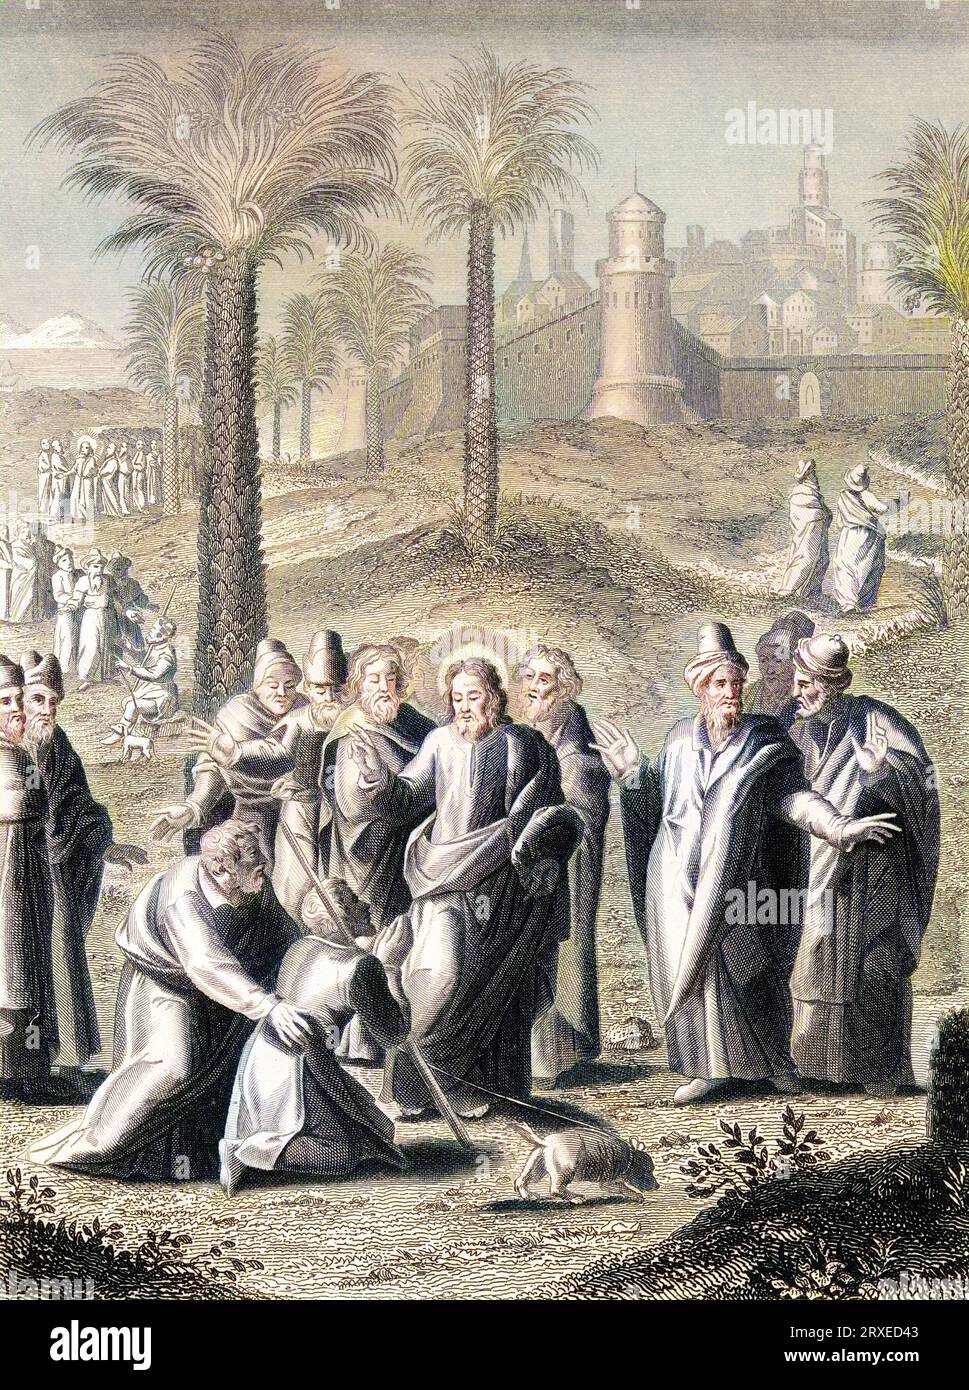 Jesus, der Jericho verlässt, heilt einen blinden Mann. Farbige Illustration für das Leben unseres Herrn Jesus Christus, geschrieben von den vier Evangelisten, 1853 Stockfoto